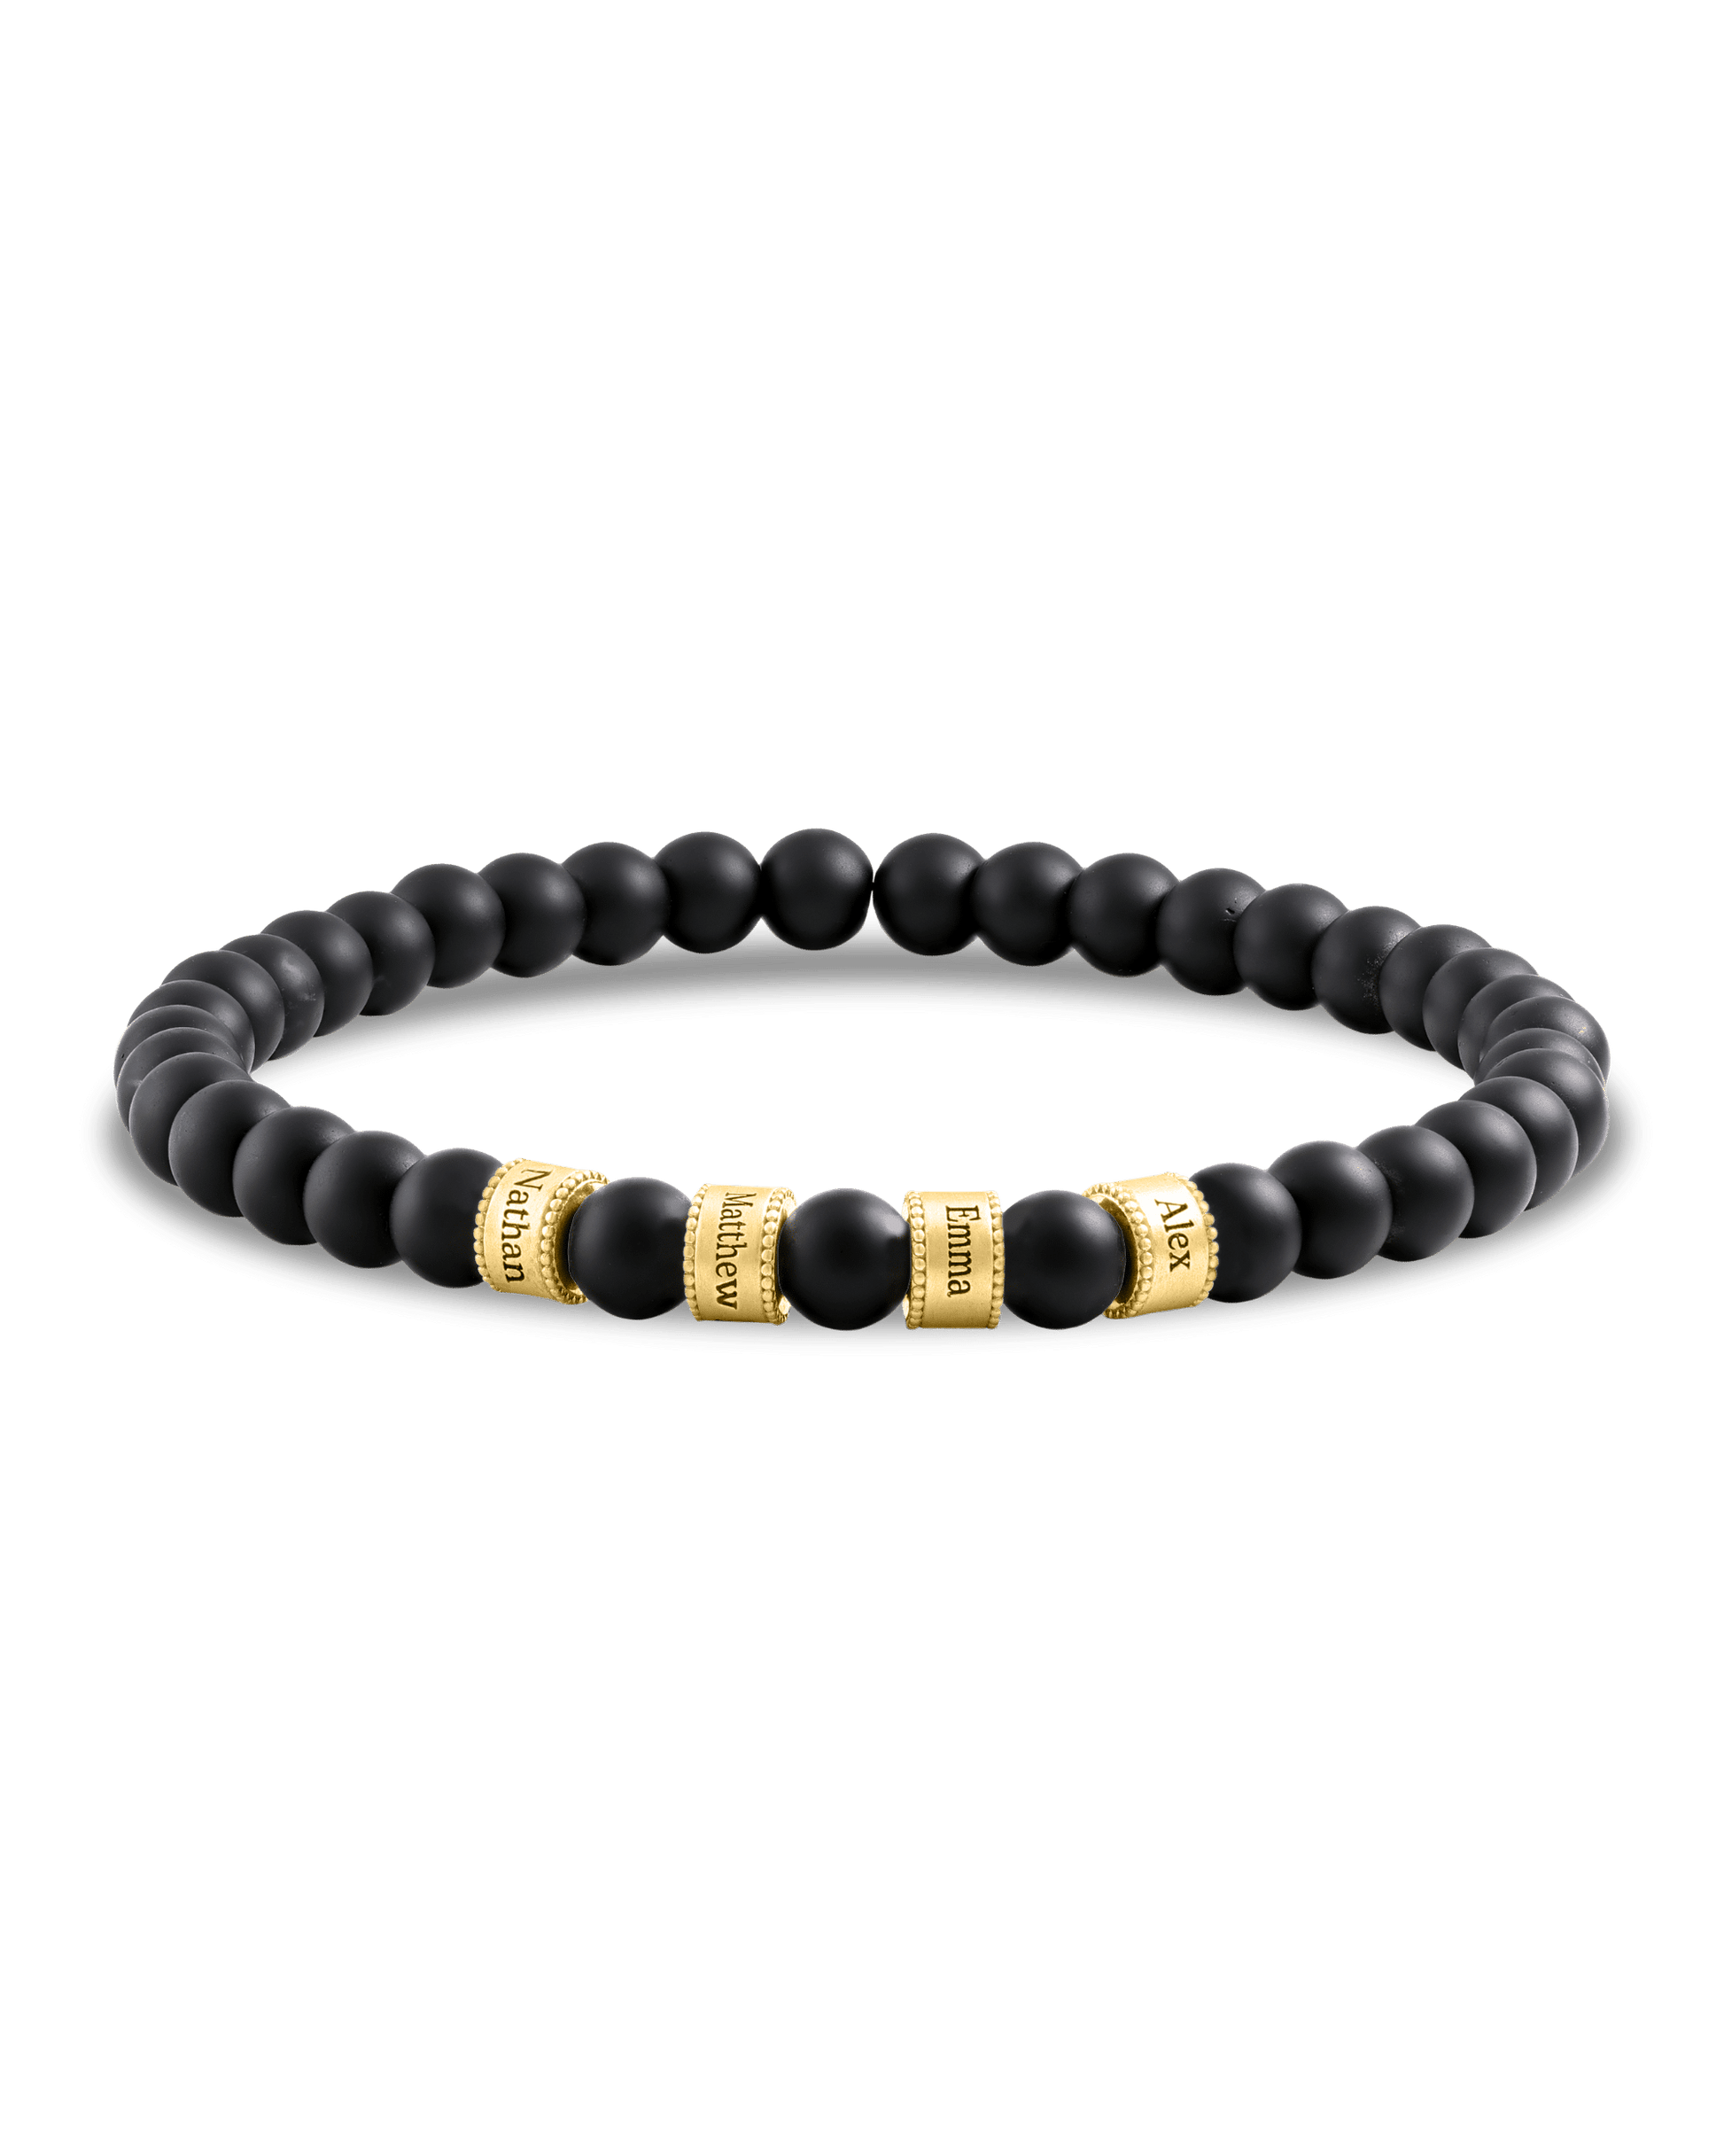 Dad's Legacy Beads Bracelet w/ Black Onyx Stones - 18K Gold Vermeil Bracelets magal-dev Black Onyx Gemstone 1 Charm 7.5" M/L Wrist